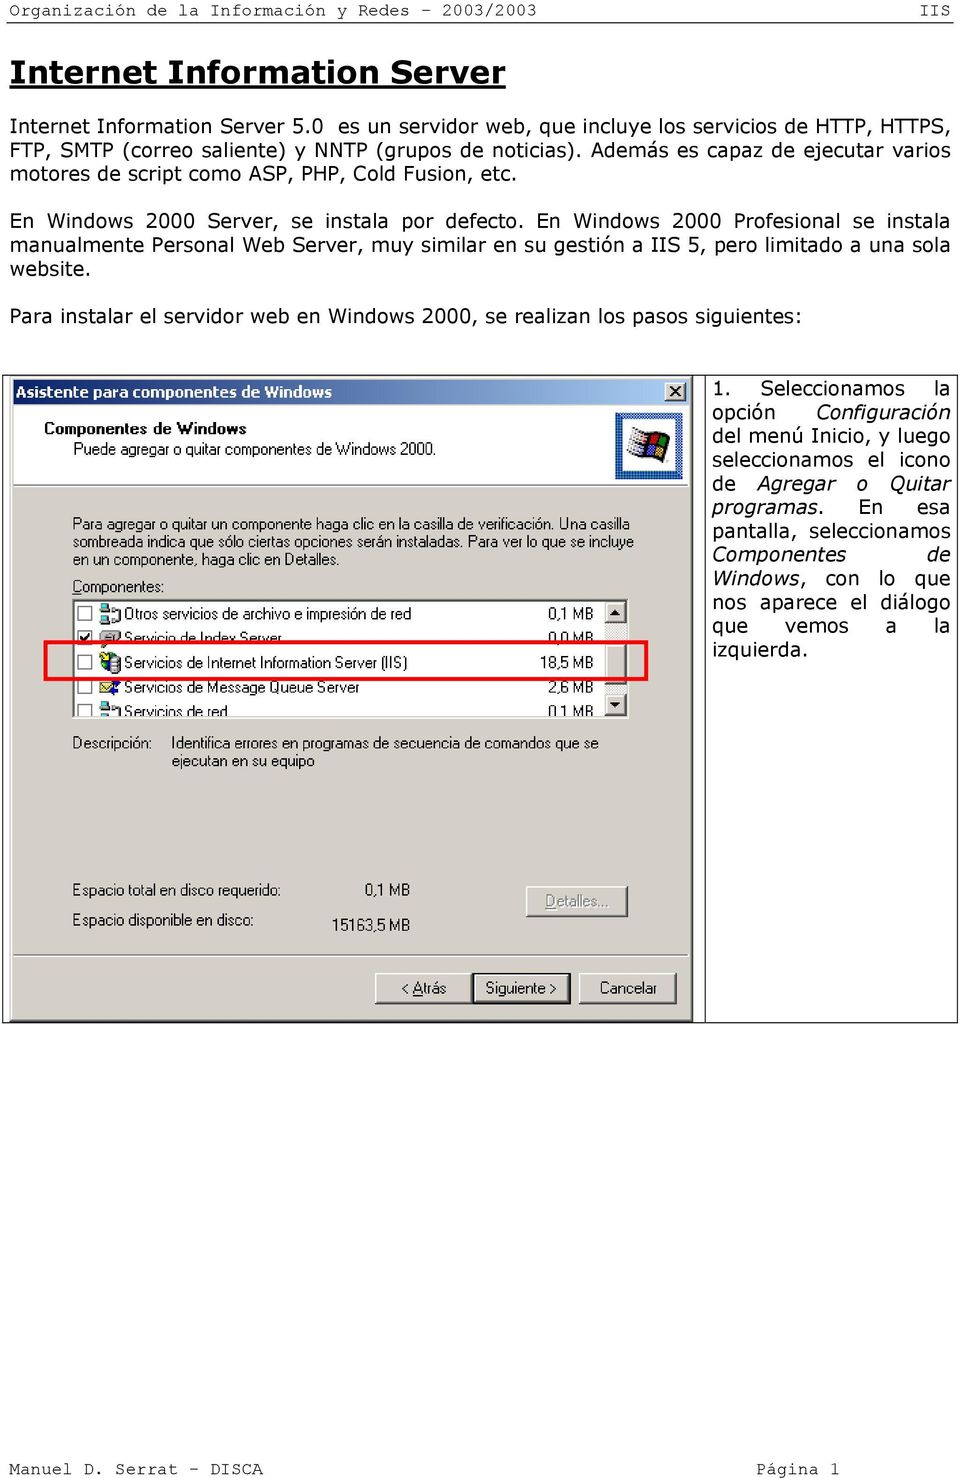 En Windows 2000 Profesional se instala manualmente Personal Web Server, muy similar en su gestión a 5, pero limitado a una sola website.